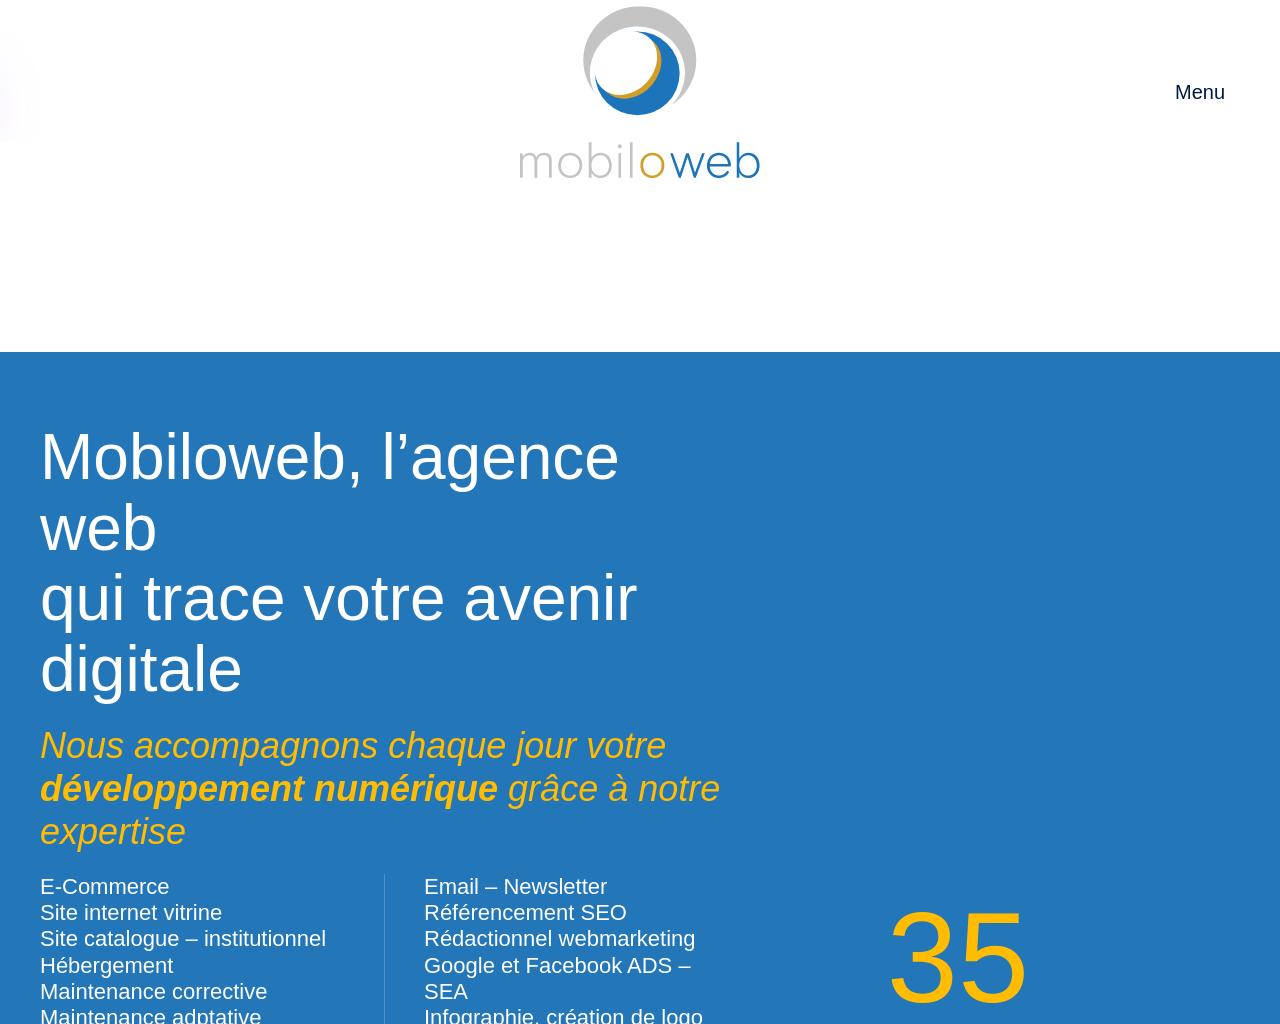 www.mobiloweb.fr